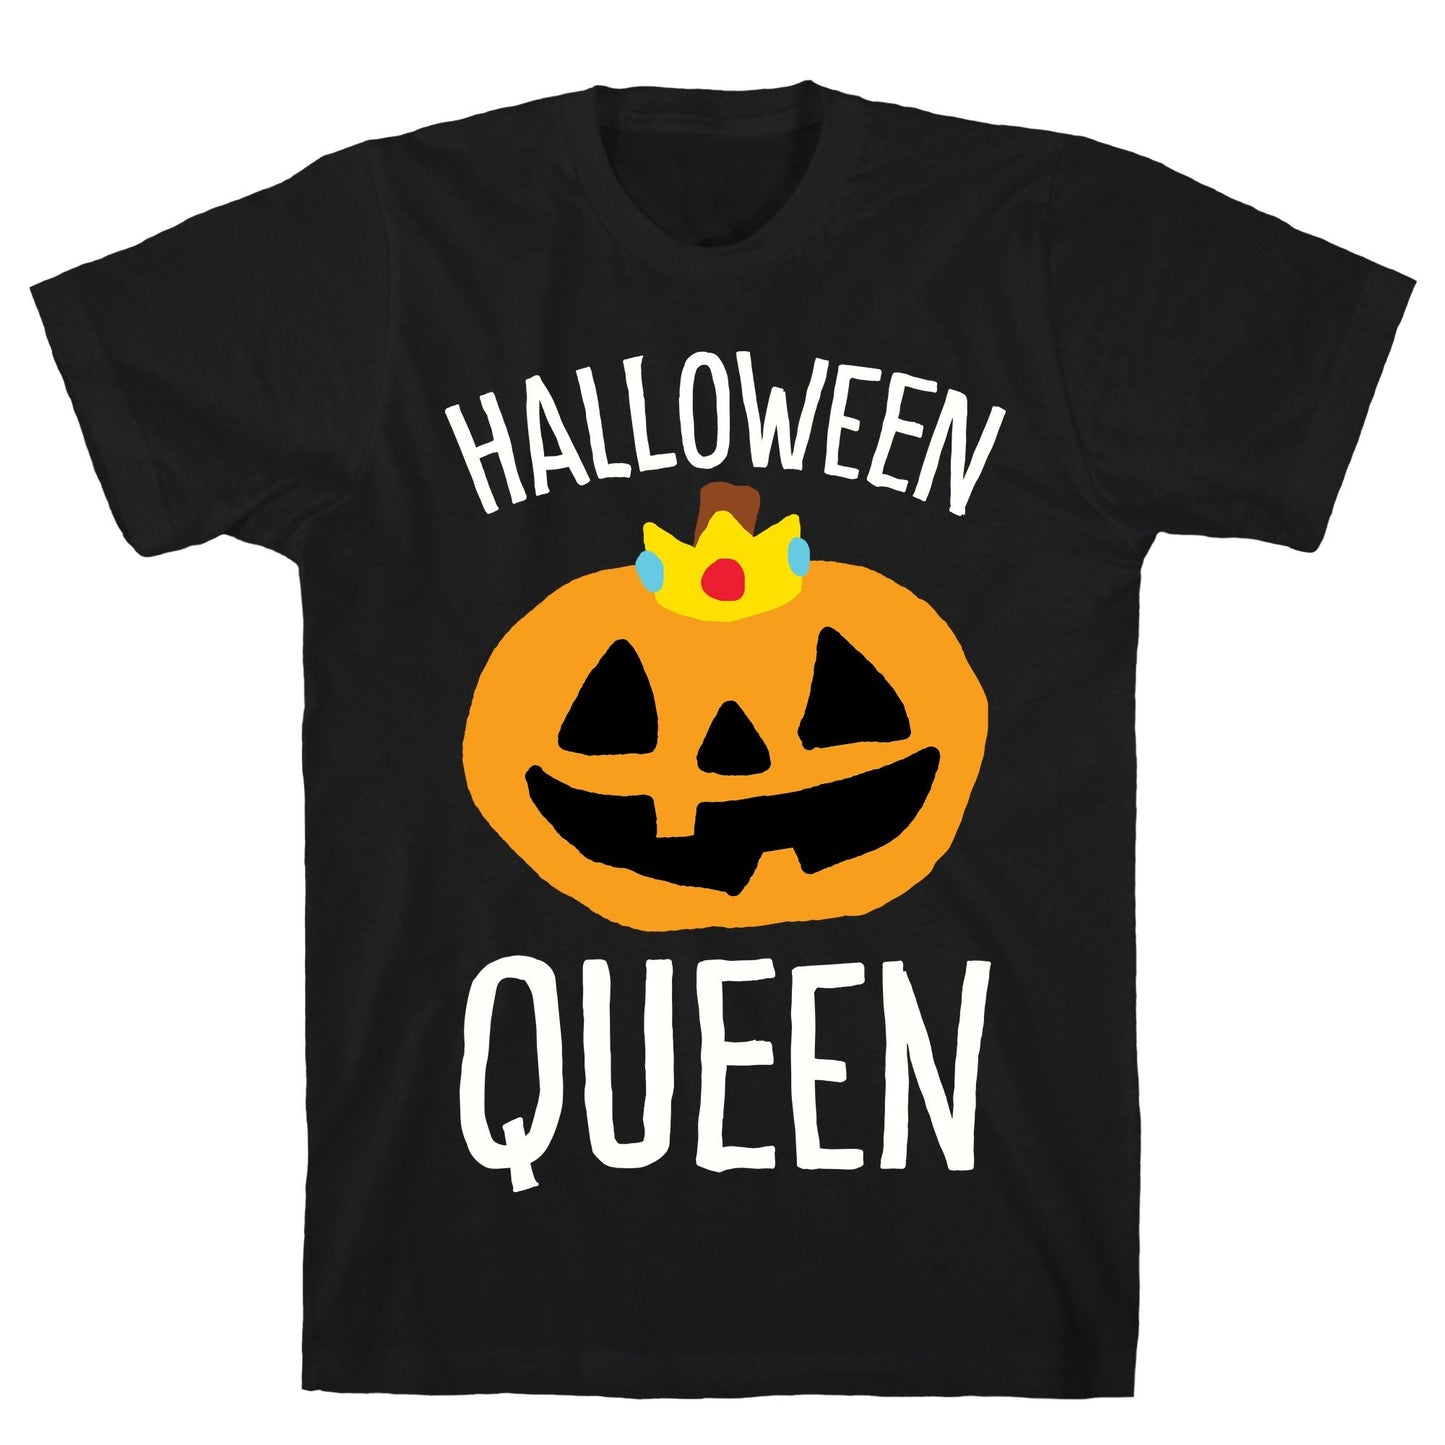 Halloween Queen Black Unisex Cotton Tee